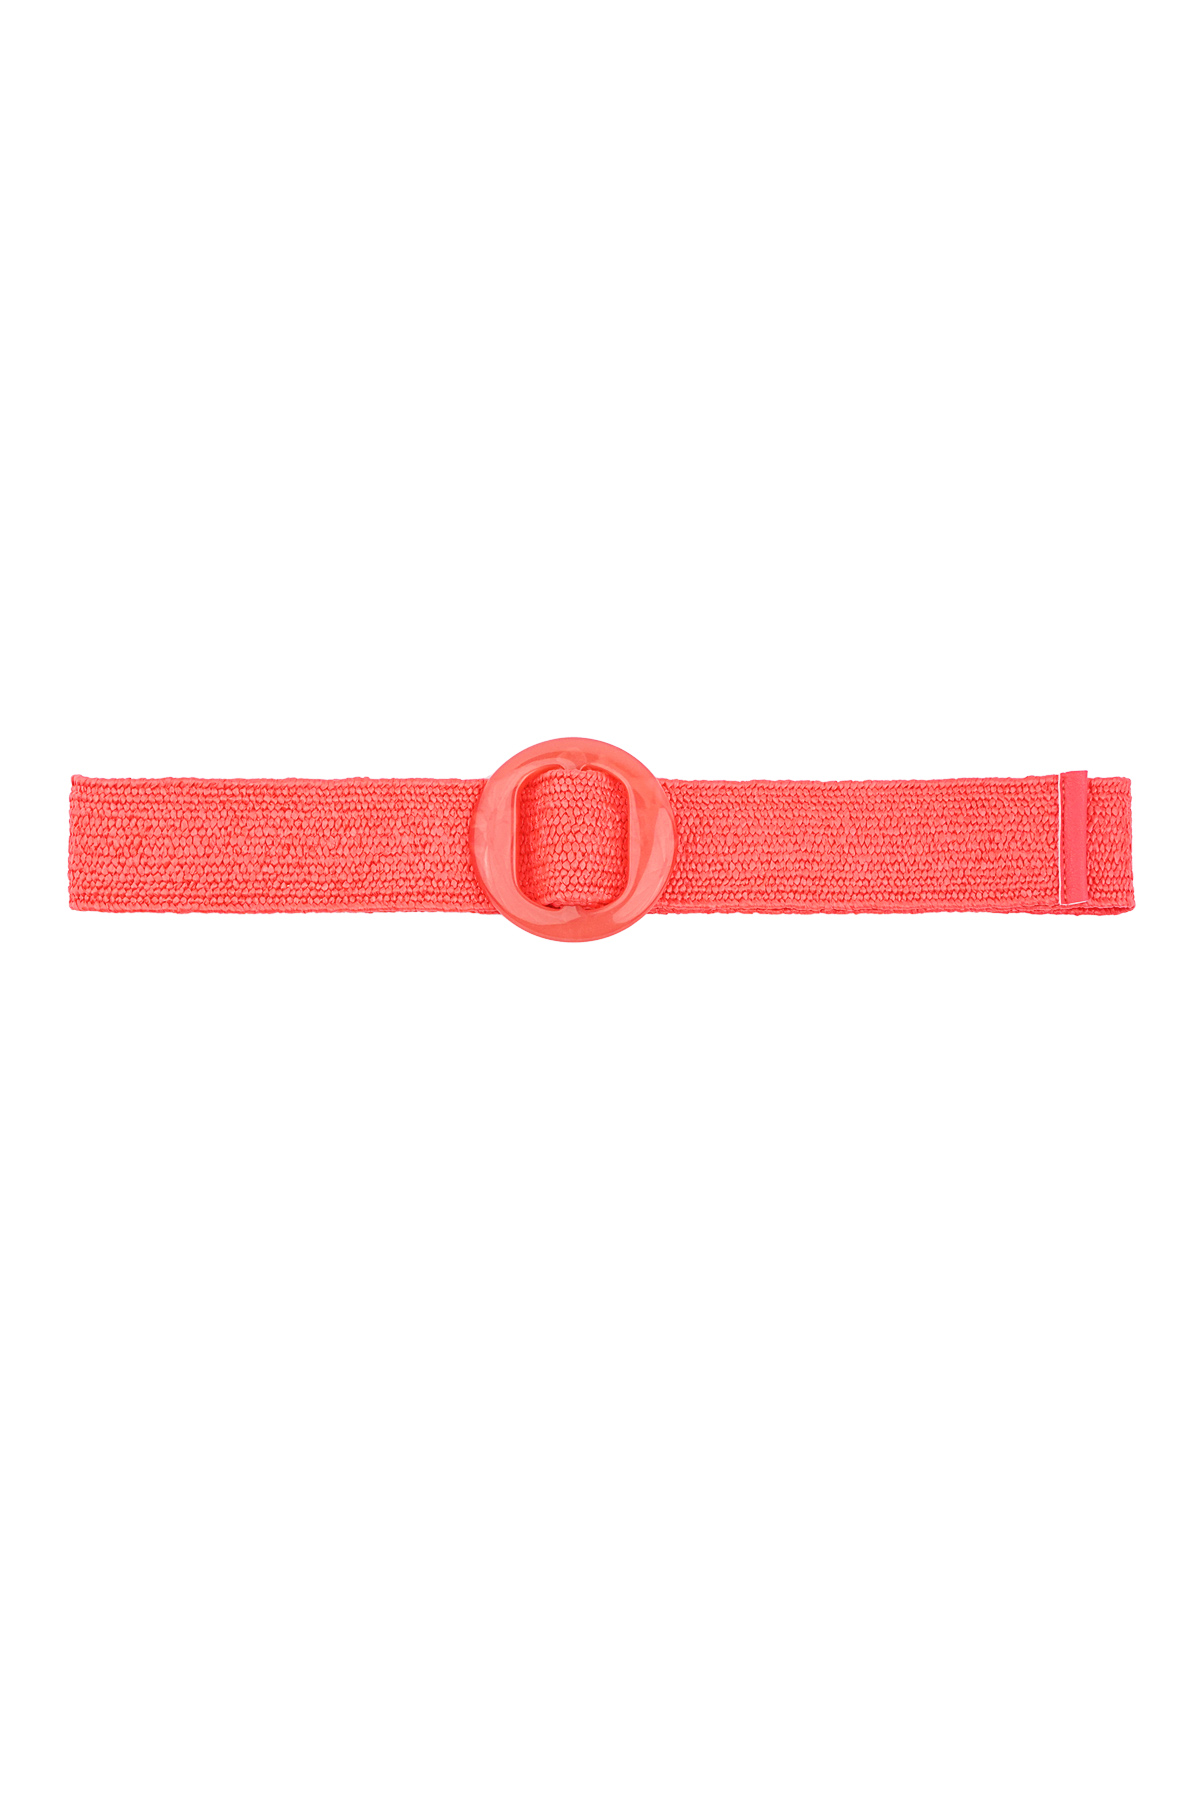 Cintura vibrante da spiaggia - rossa  h5 